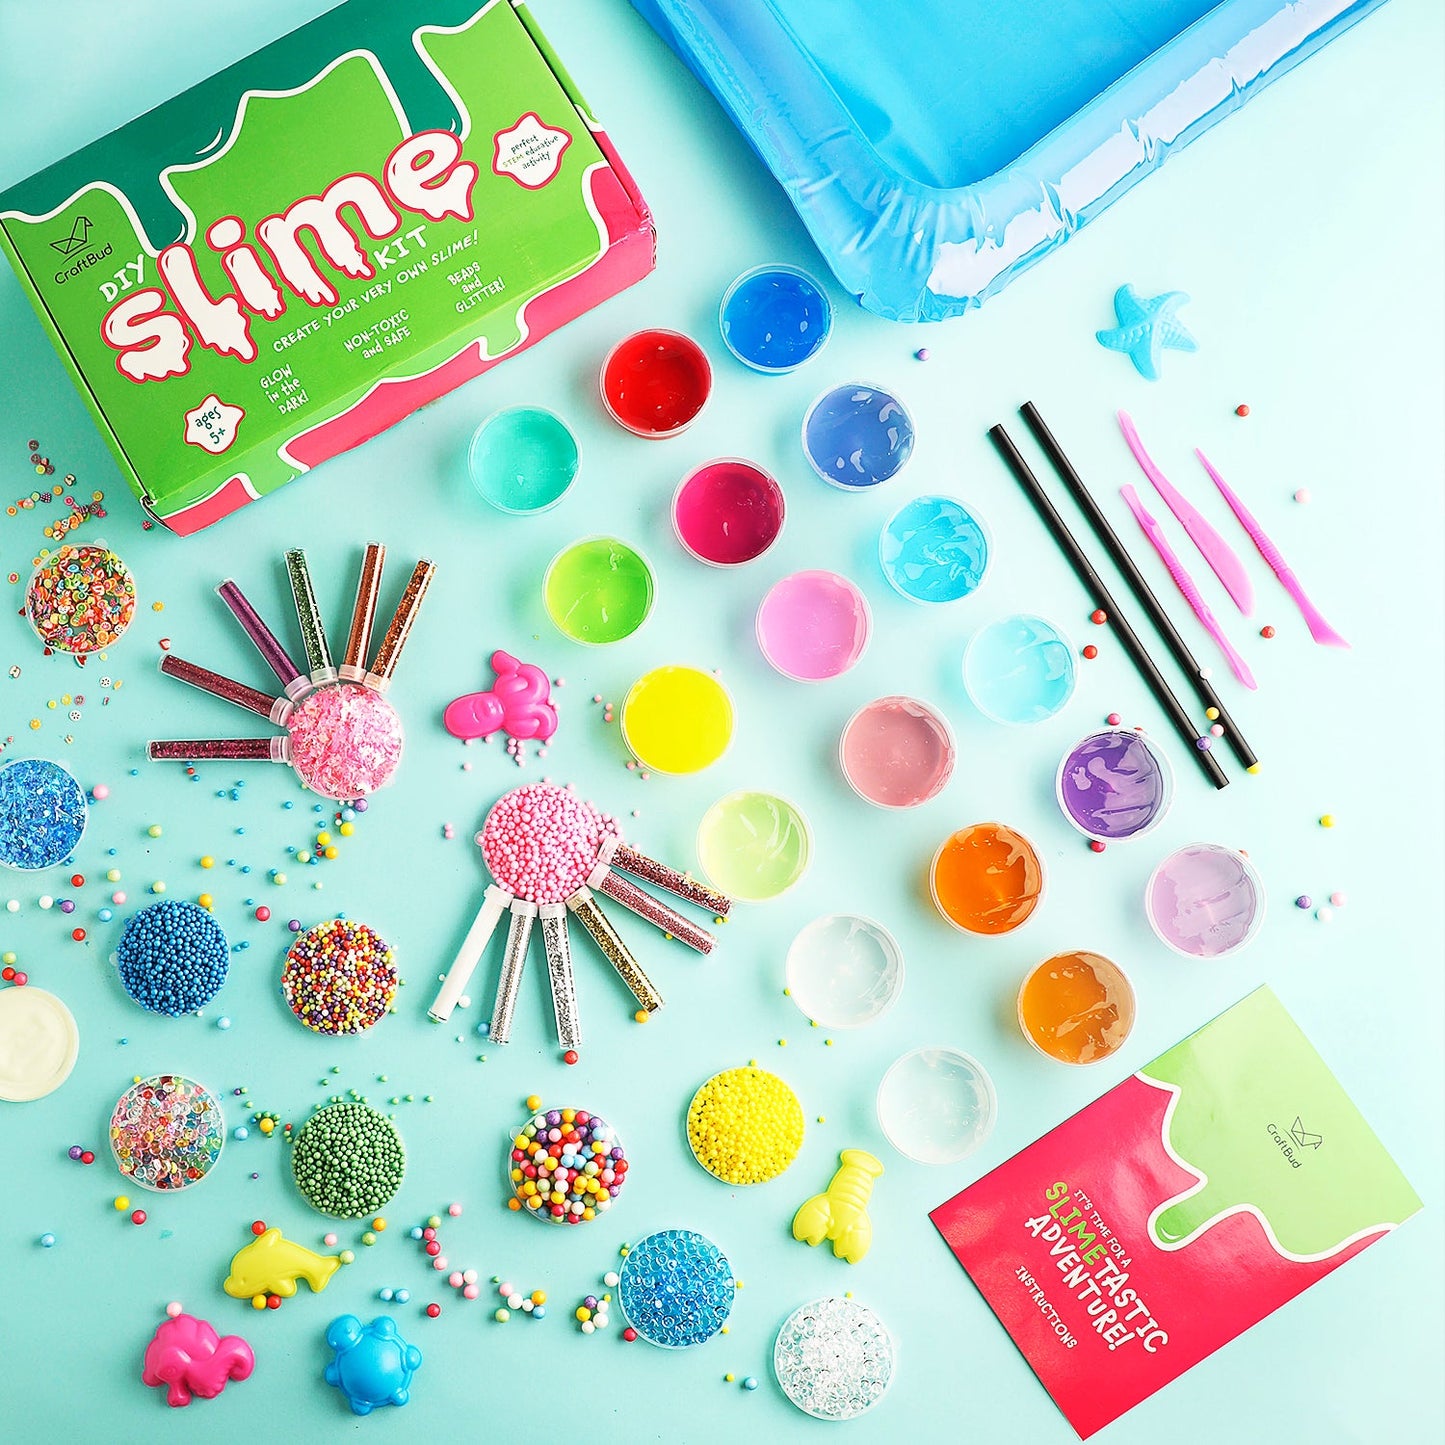 DIY Slime Kit For Kids spread